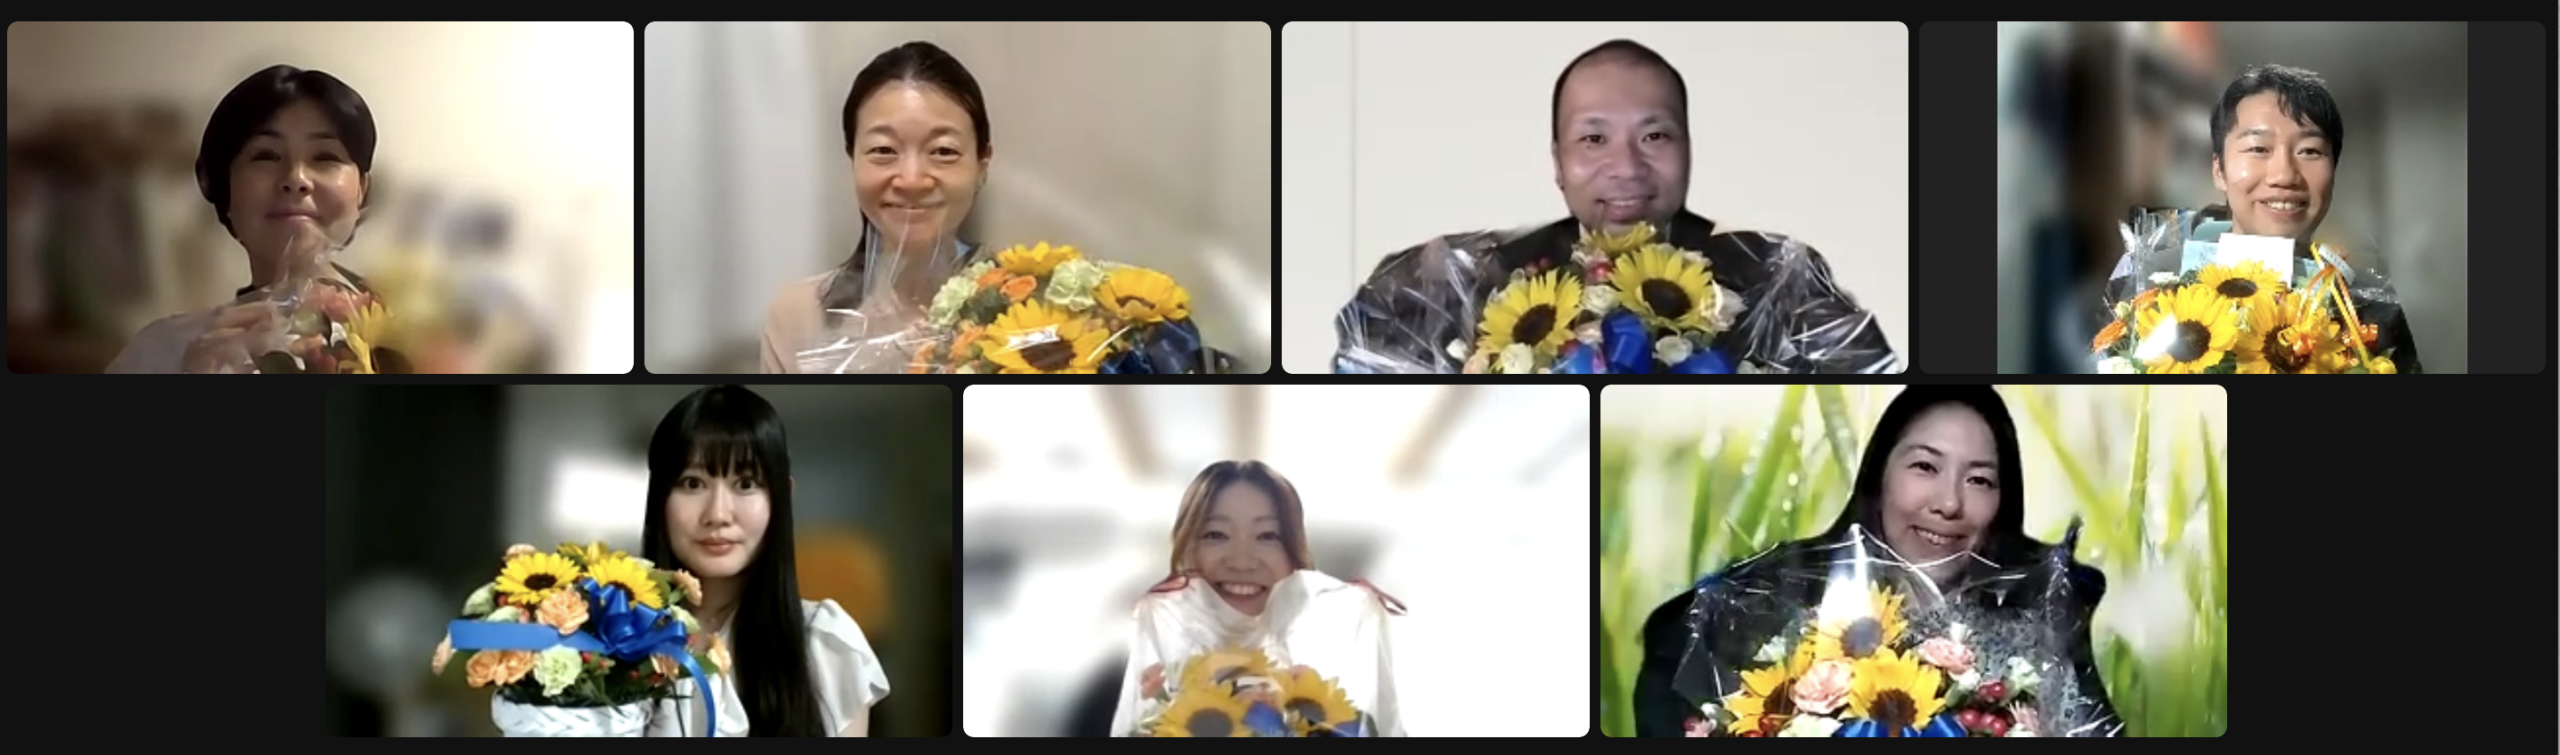 Nami Okazakiさんが参加された2023年度リーダーシップ研修グローバルマネージメントアカデミー(GMA)の卒業式の様子。参加された卒業生の方々がひまわりの花束を持って写真撮影をしている様子。